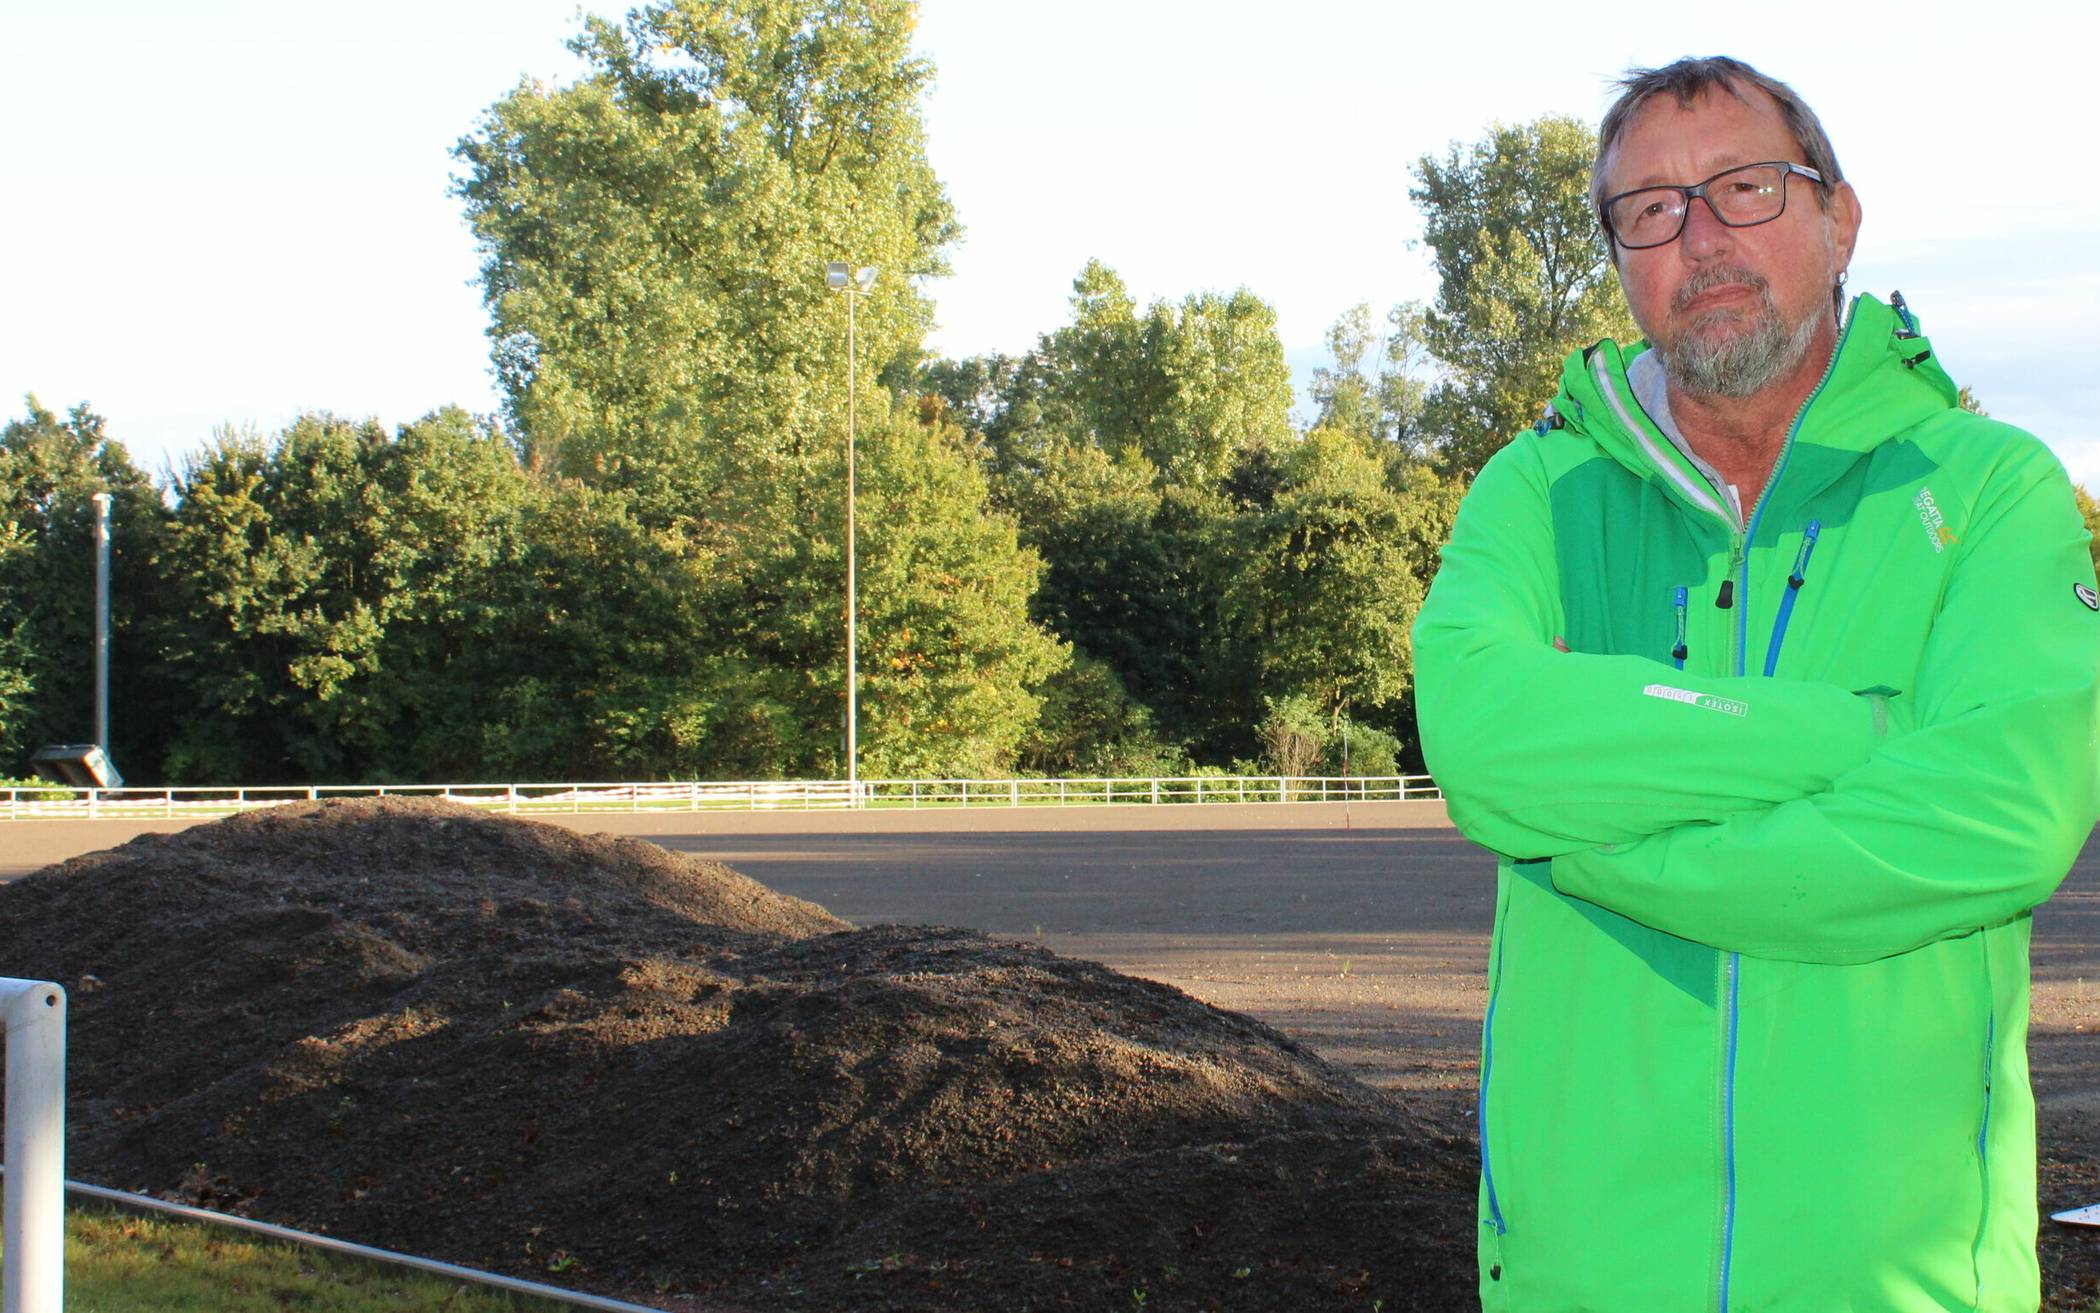  Ralf Nickel, sportlicher Leiter der Fußballabteilung des TSV Norf, ist erleichtert, dass es auf dem unteren Tennenplatz weitergeht.  